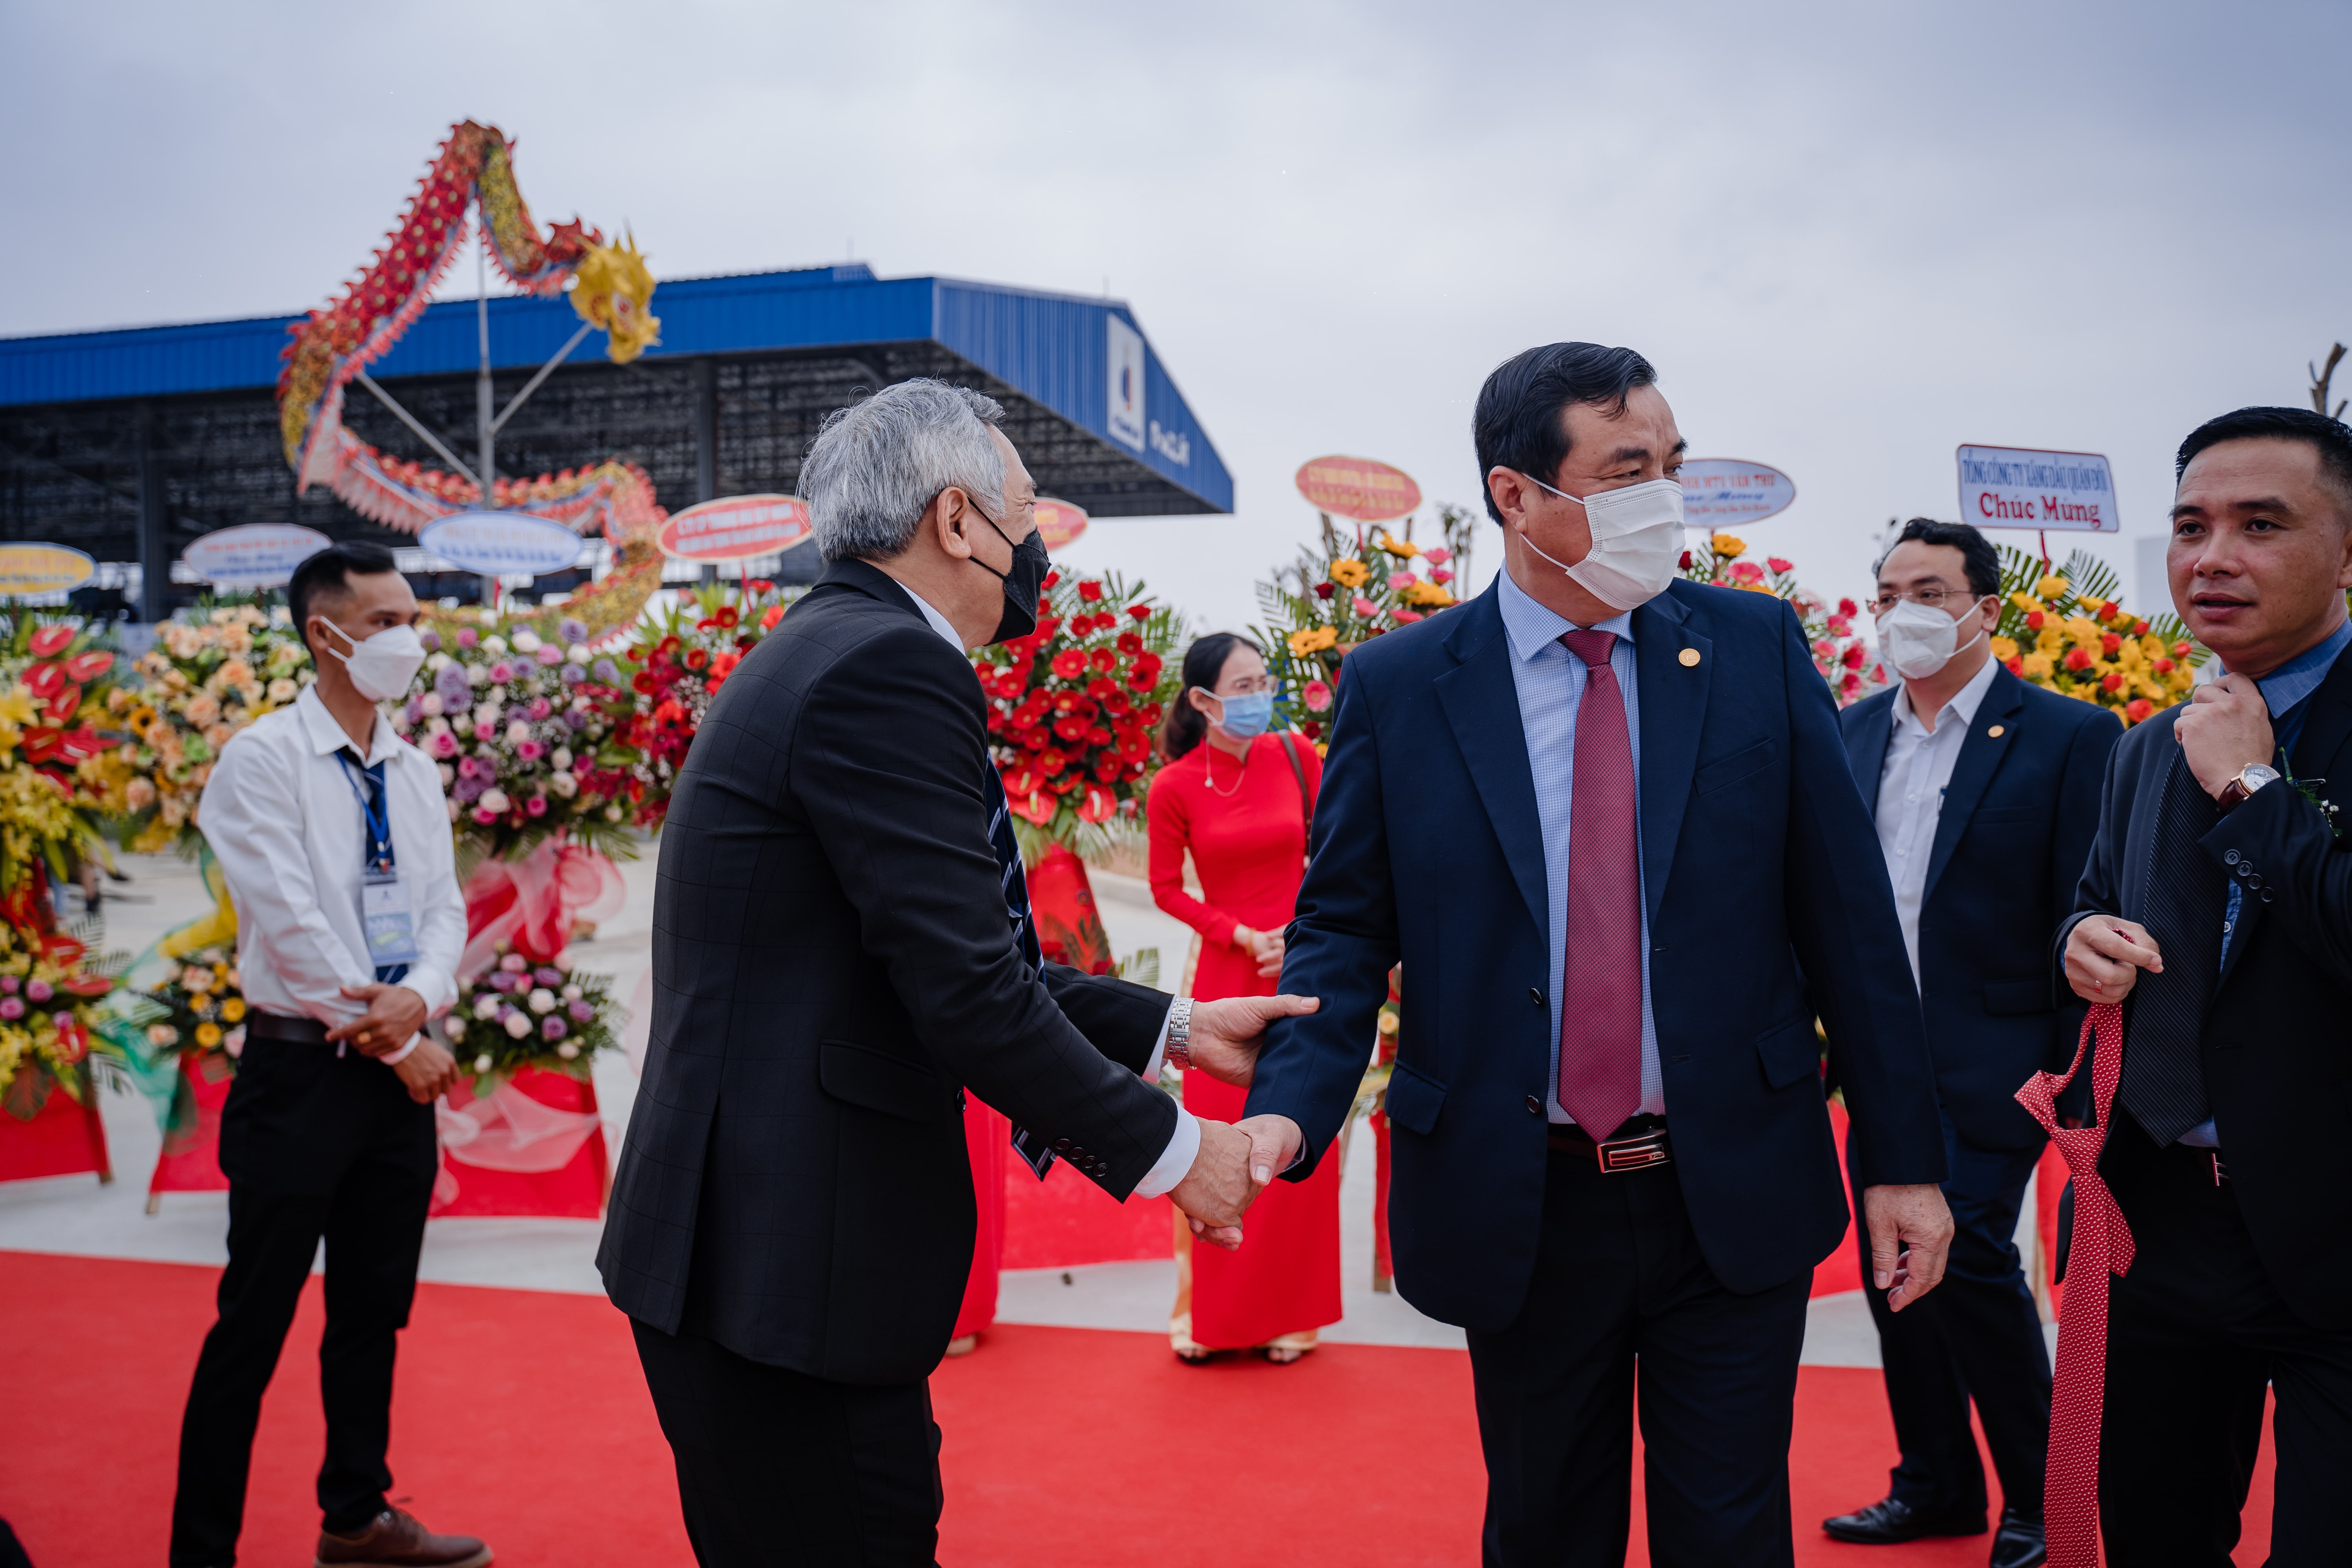 The inauguration ceremony of Hoa Khanh petroleum depot (Quang Nam) - 19/03/2022